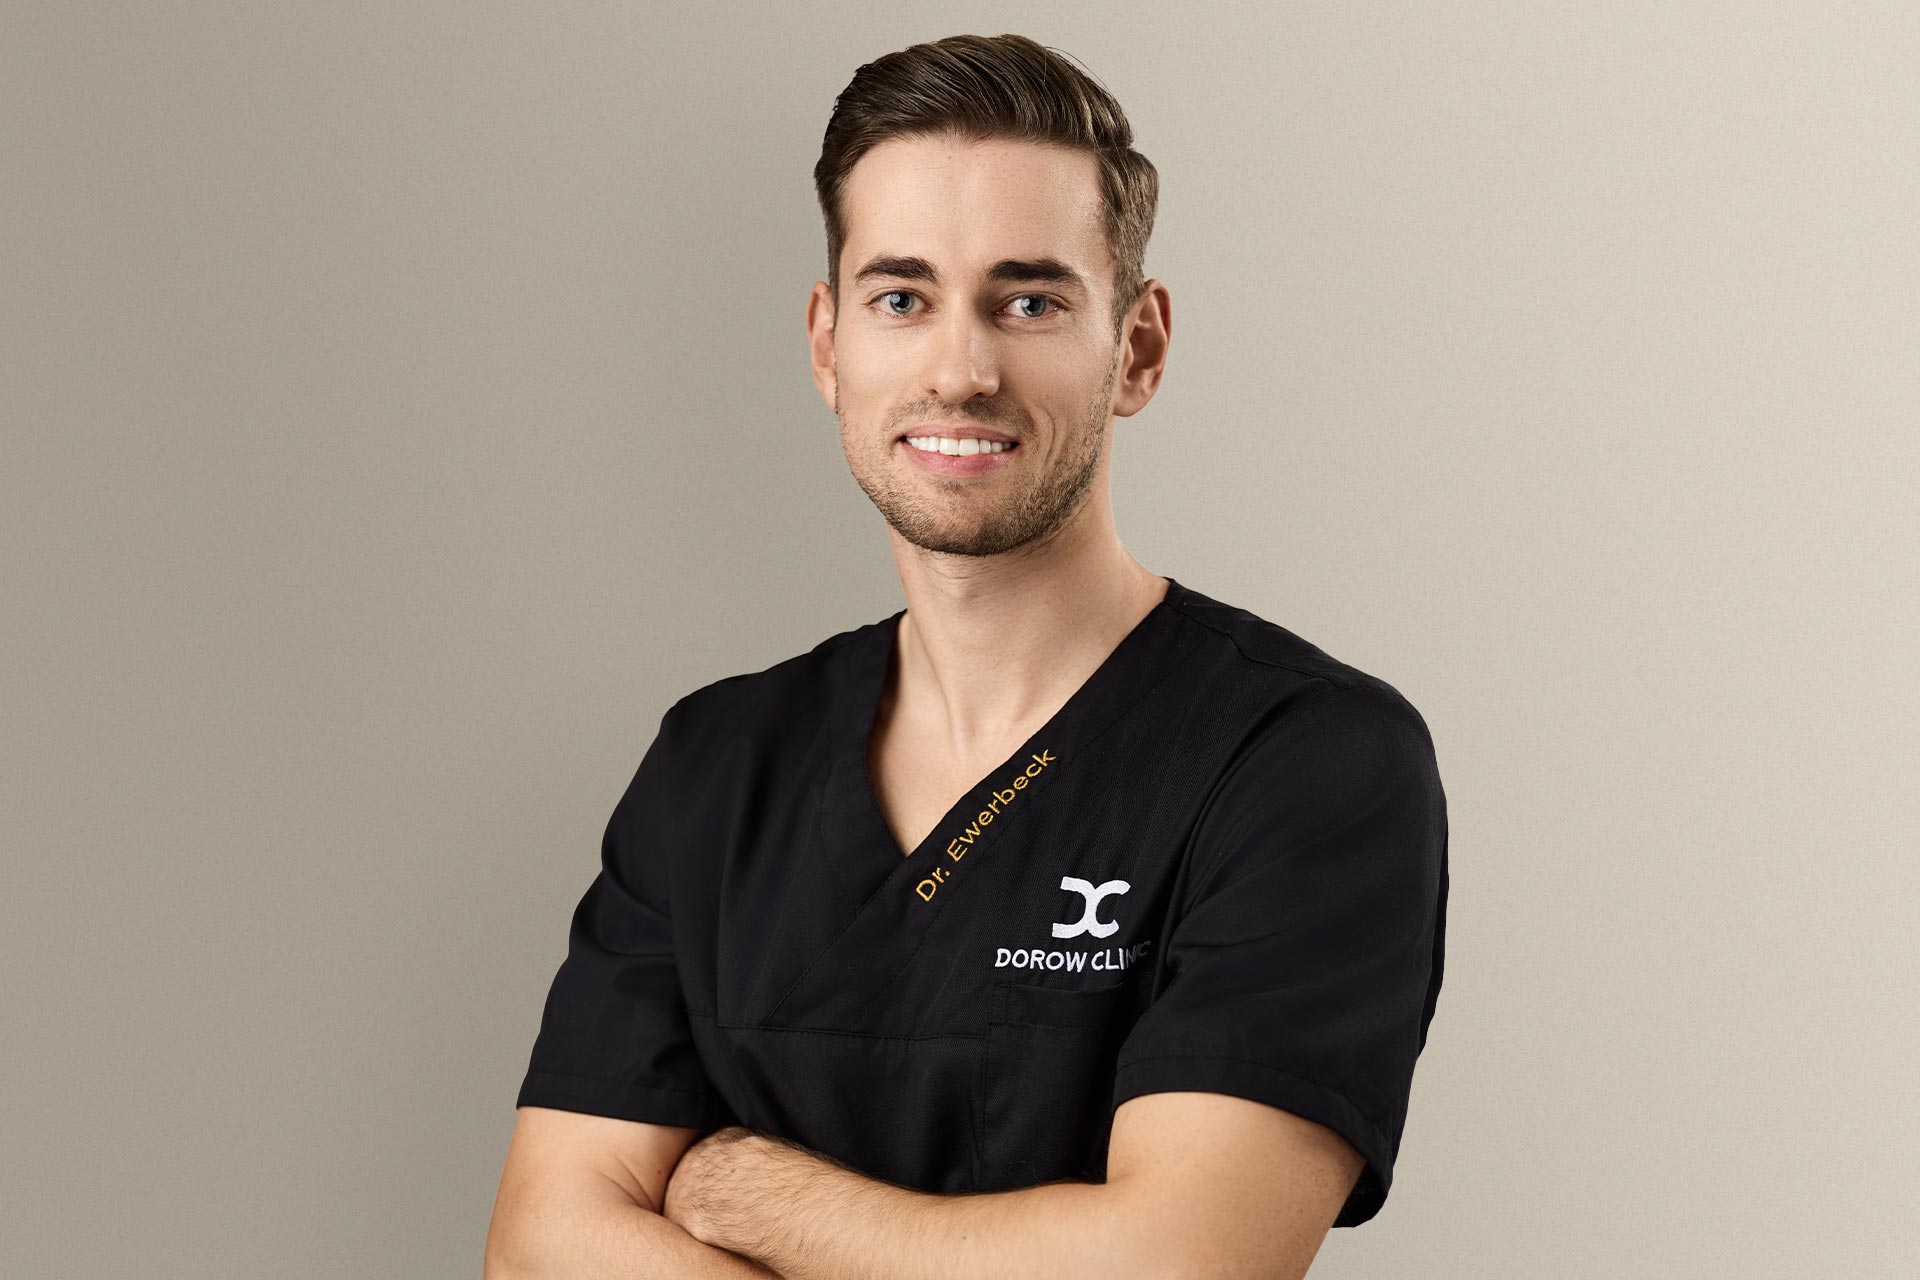 jonathan ewerbeck zahnarzt in der dorow clinic